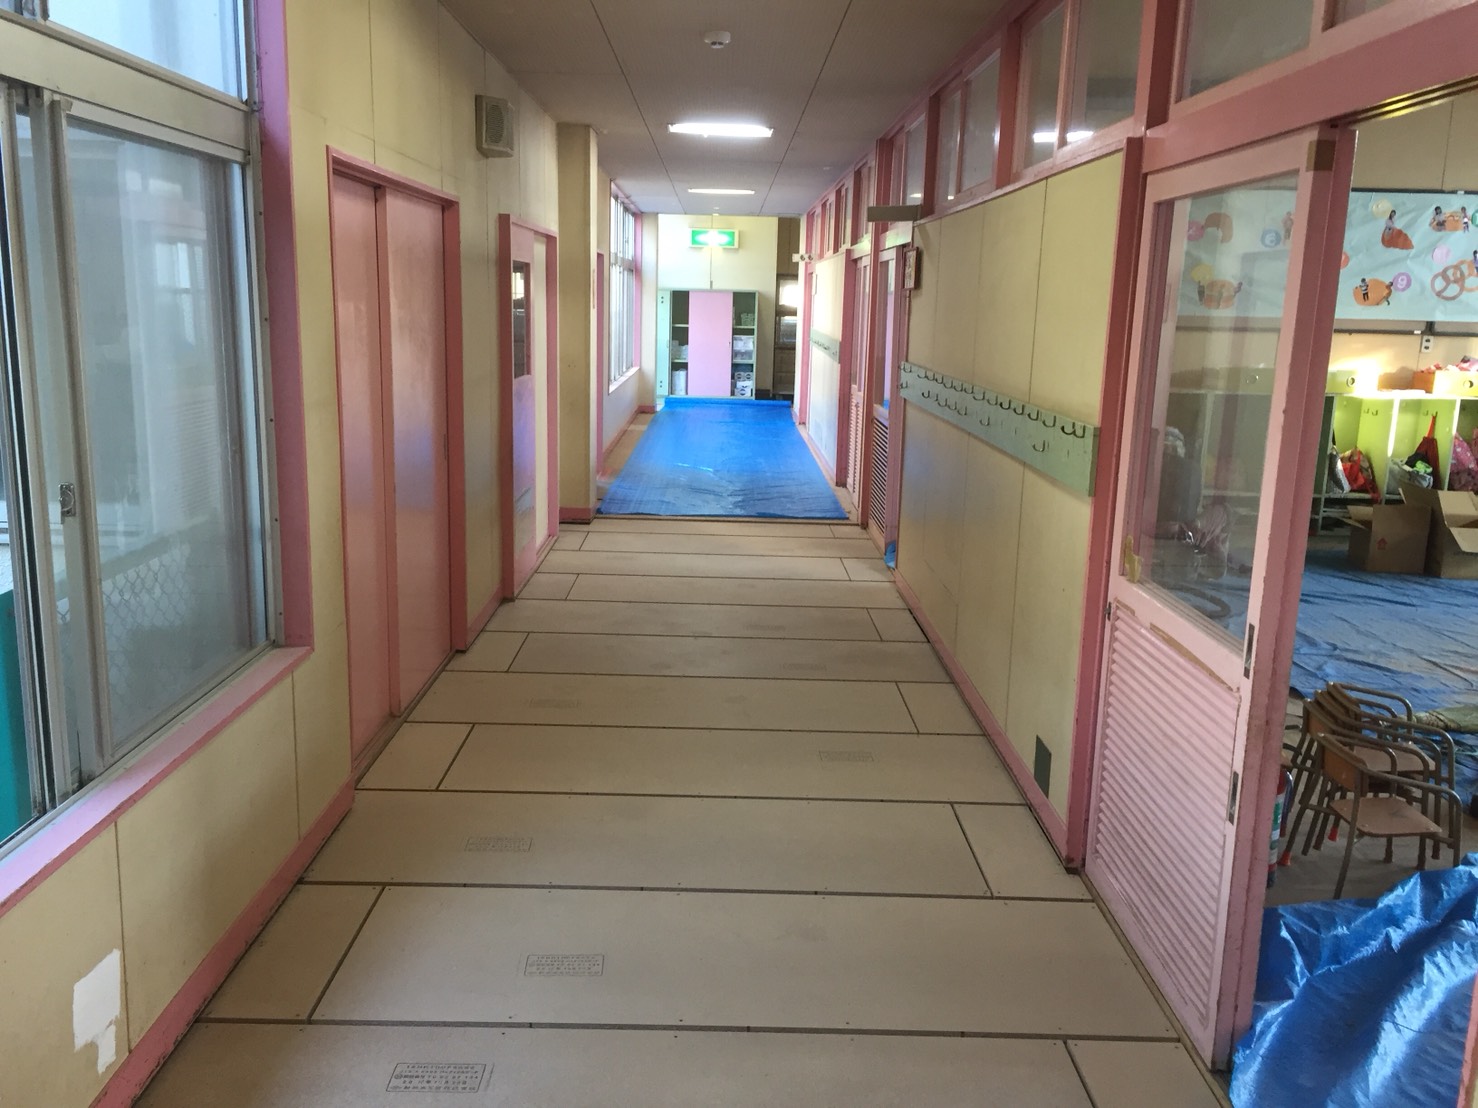 千葉県野田市の保育園にて、床改修、置床工事を行いました。